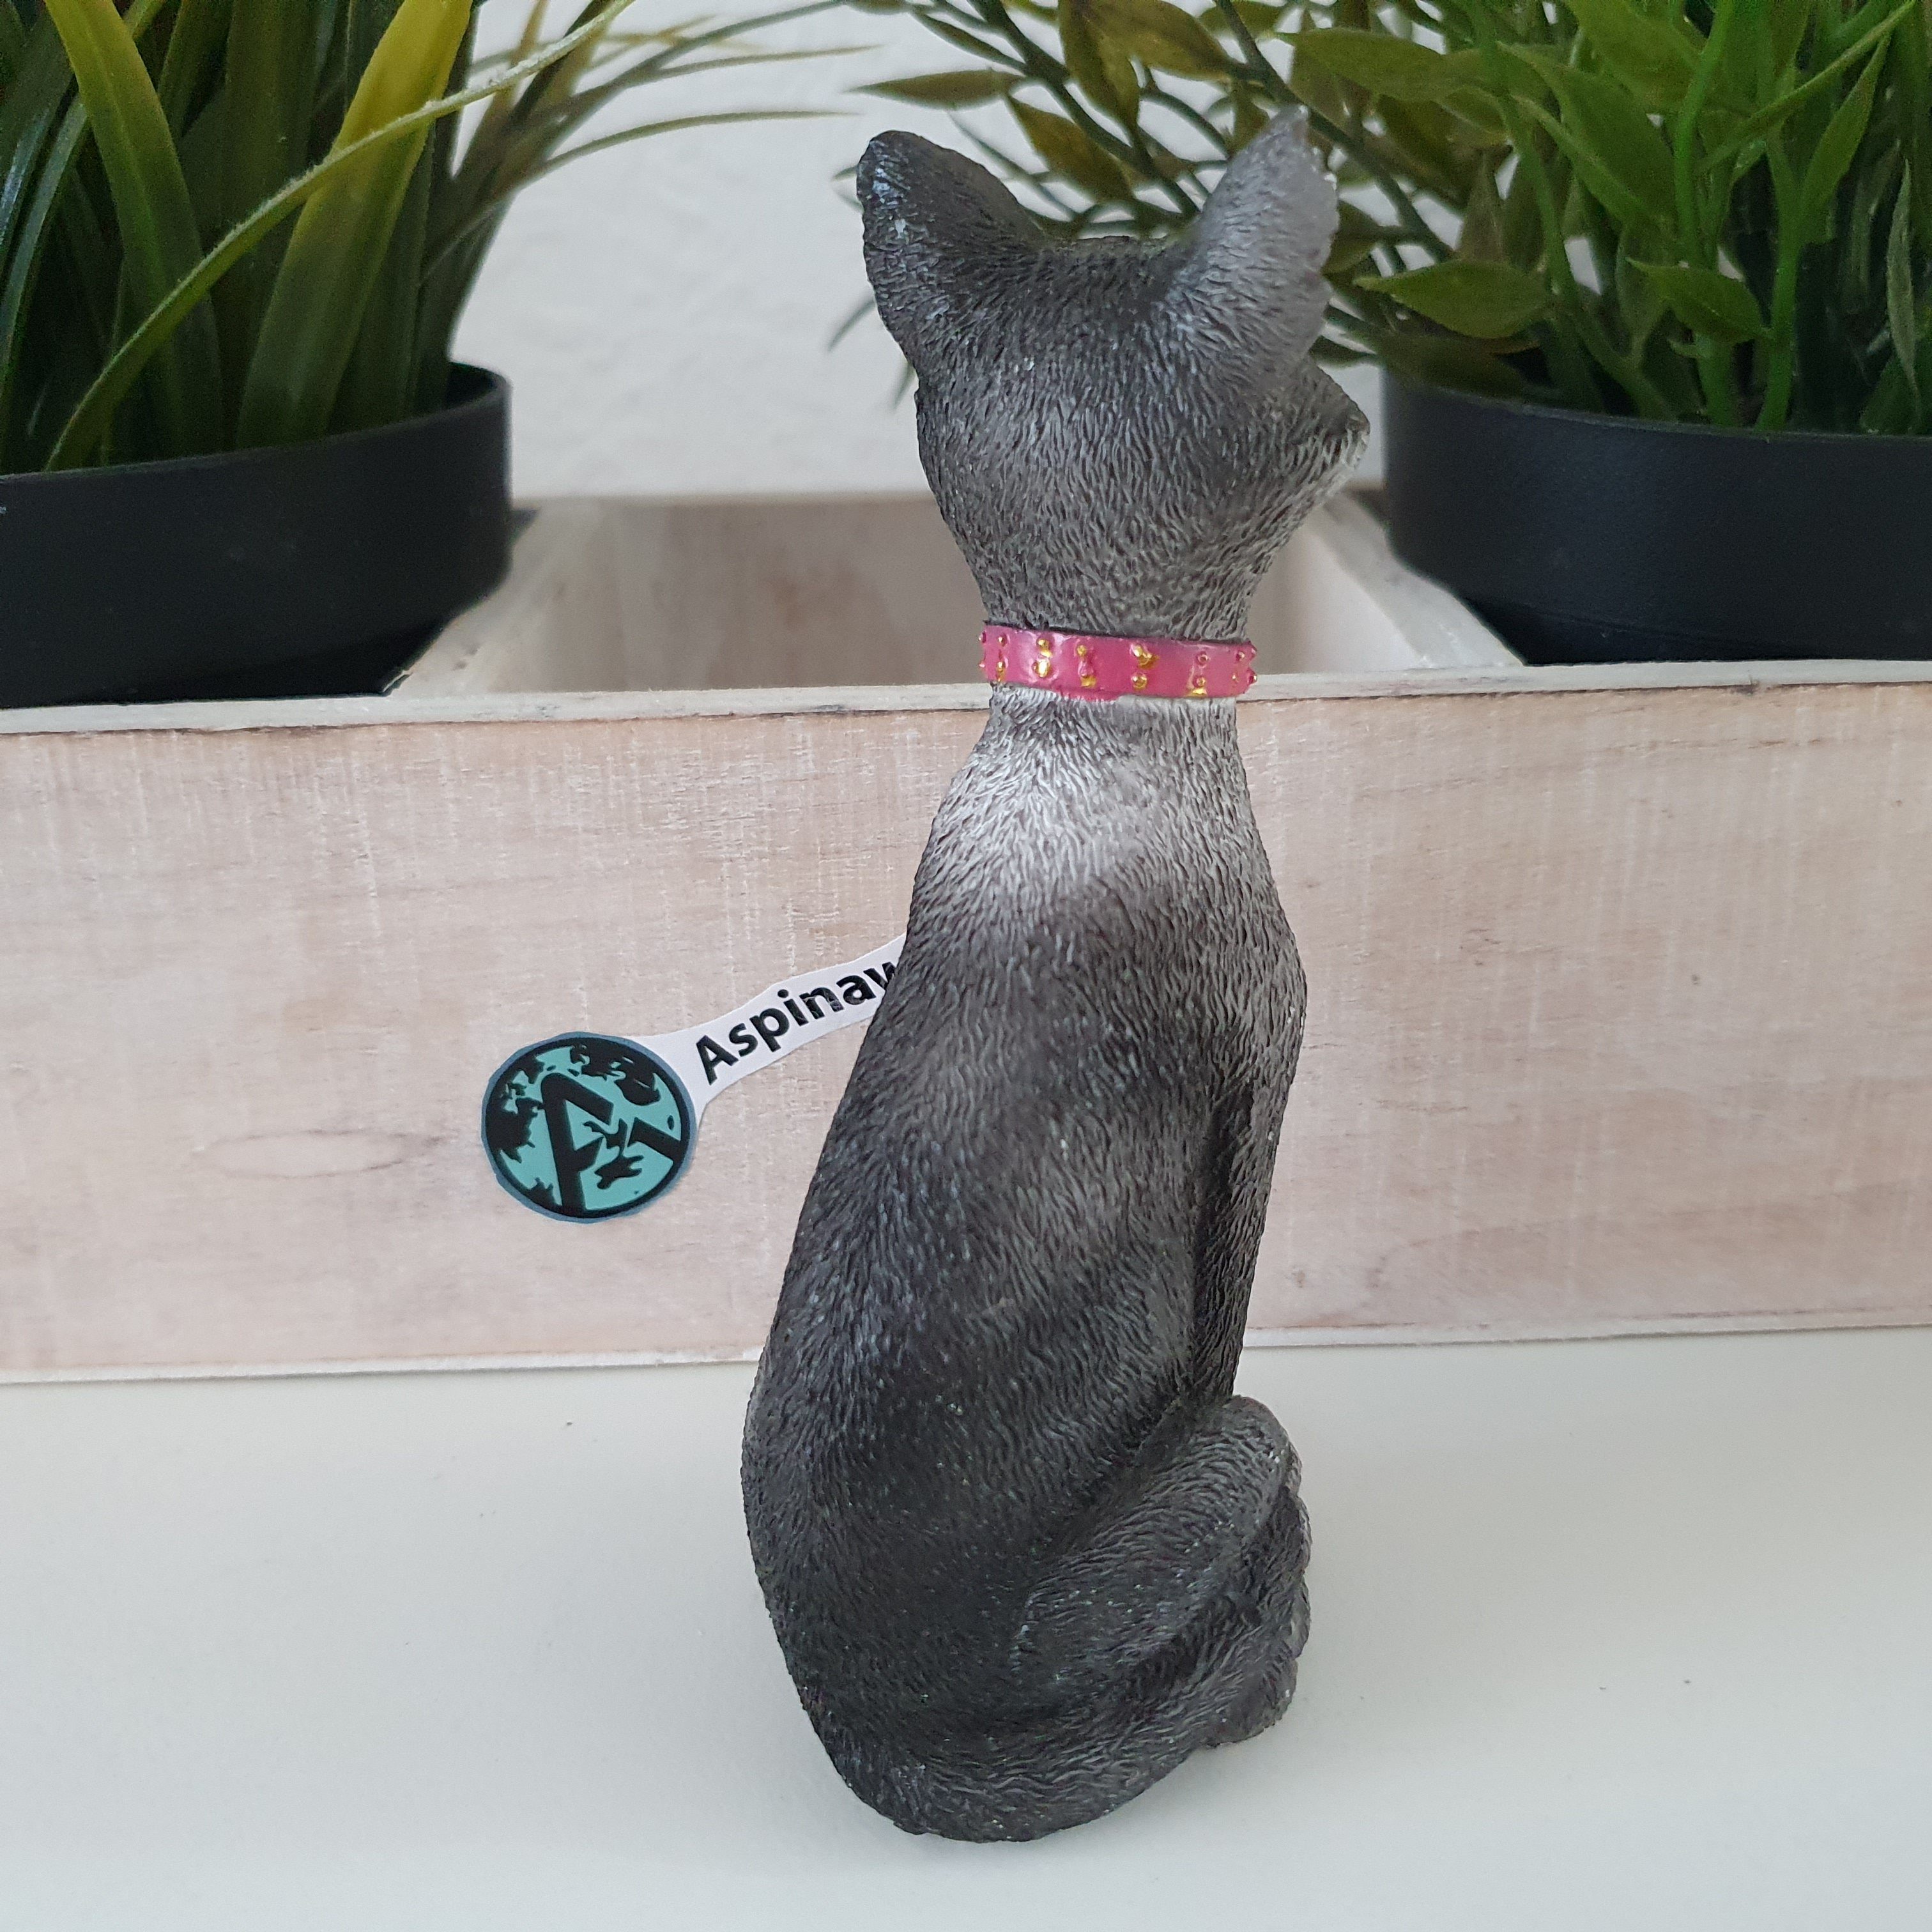 12 Katze Gartenfigur Sitzt Aspinaworld Katzenfigur Deko cm die